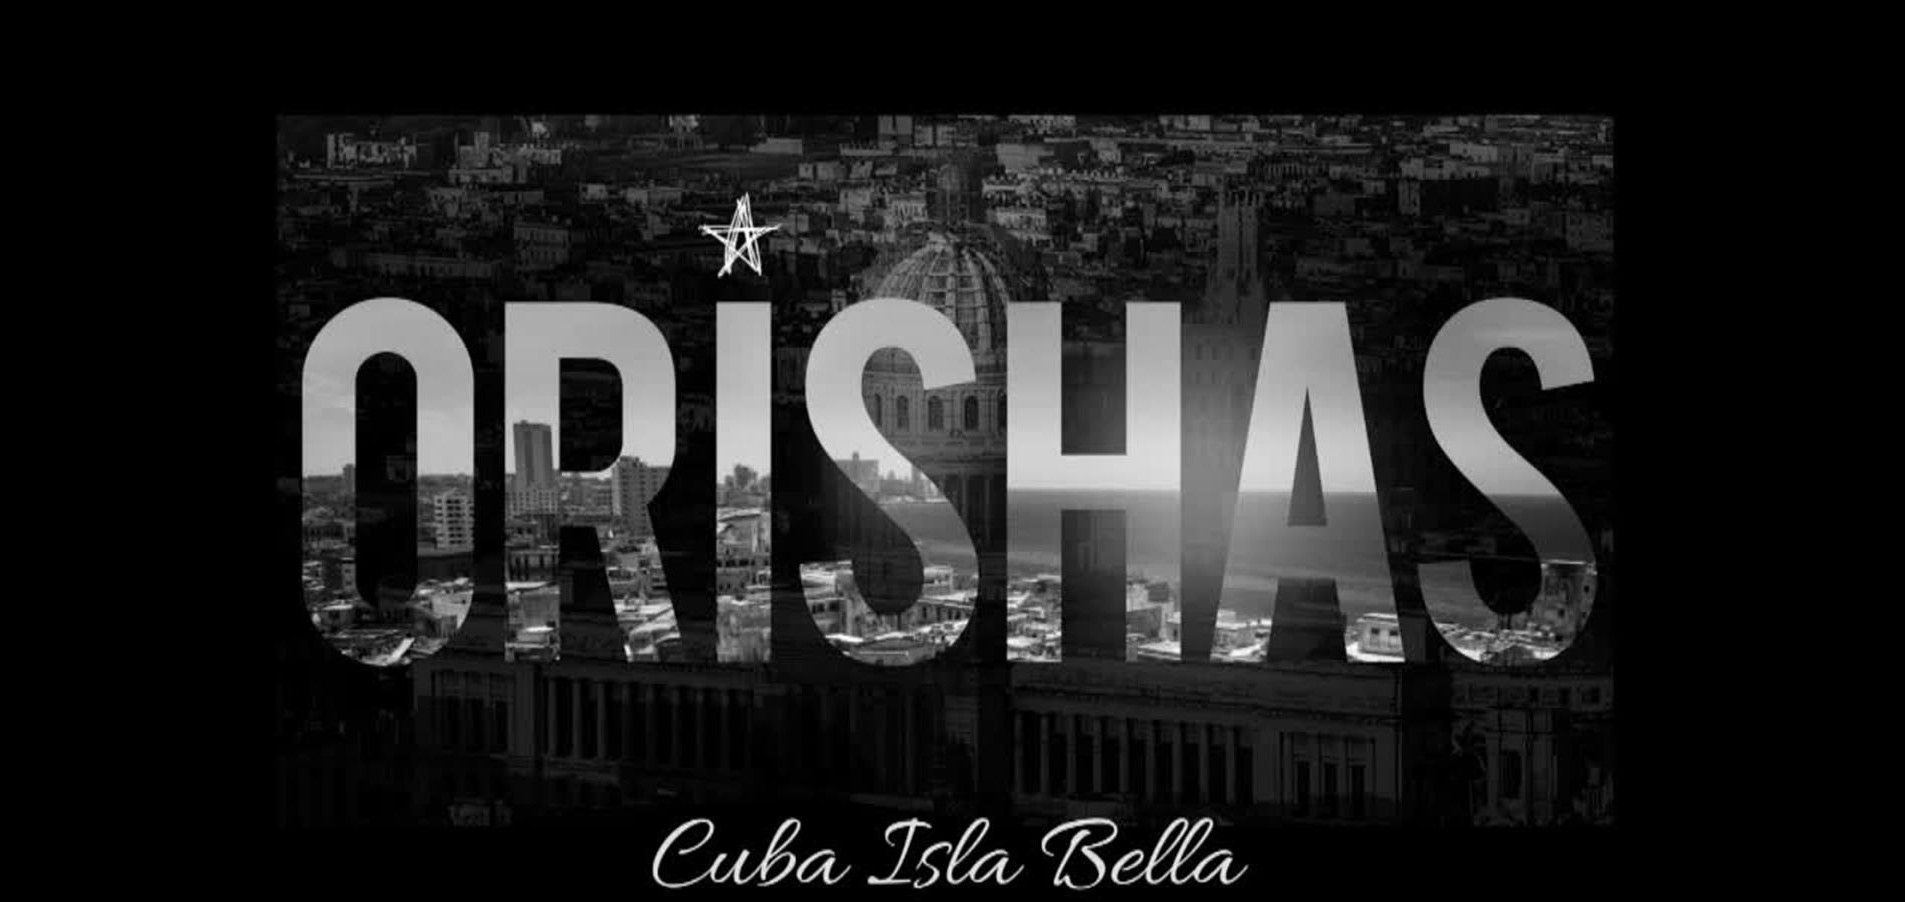 “Cuba Isla Bella”